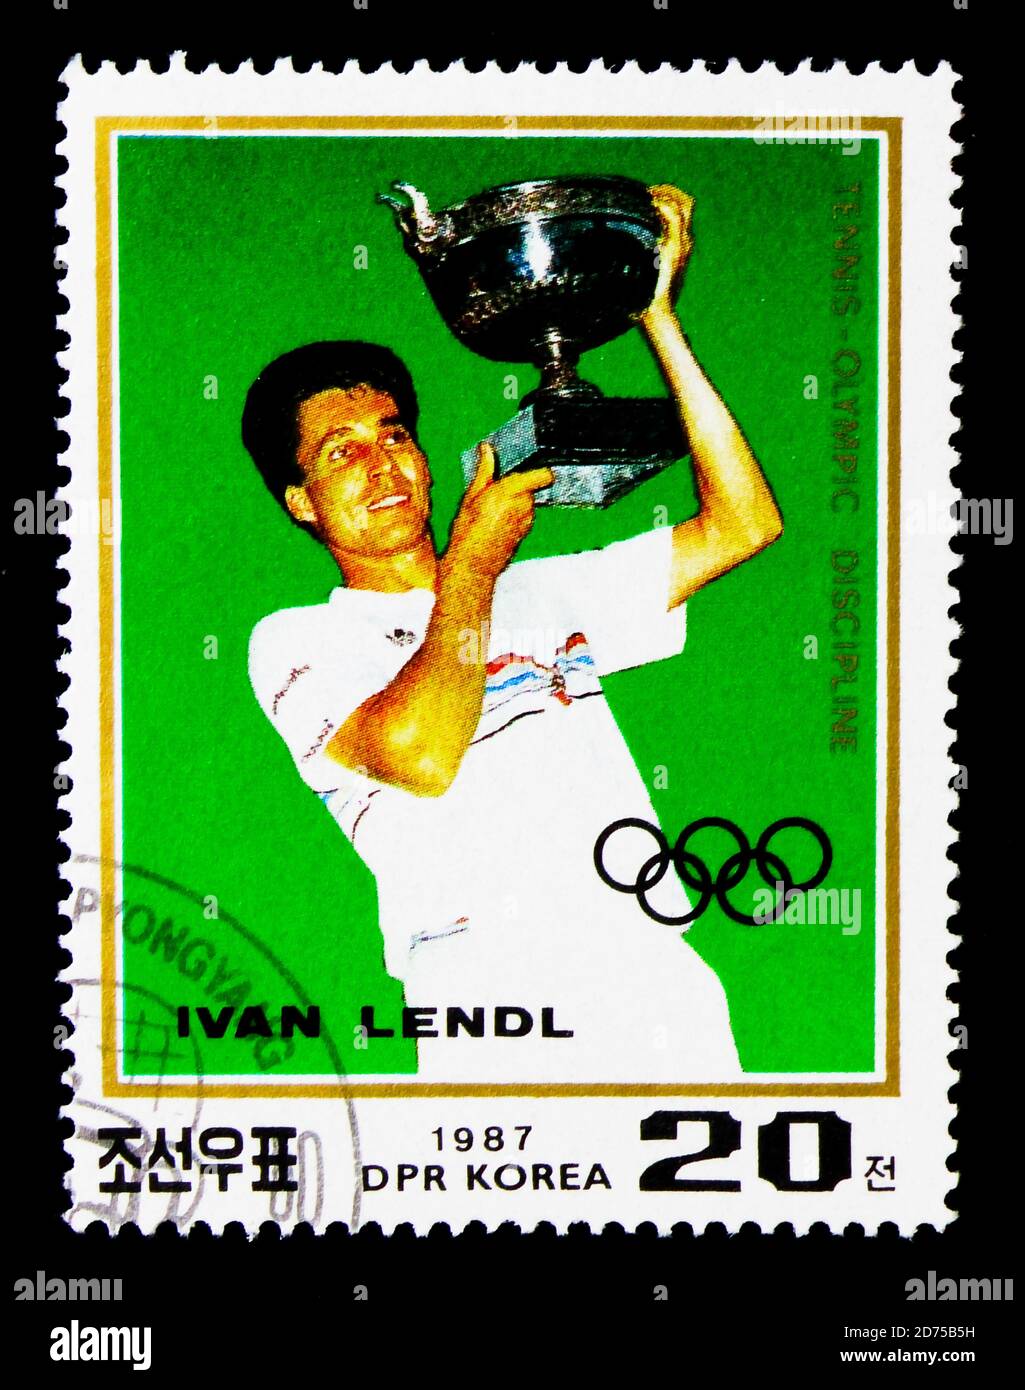 MOSCOU, RUSSIE - 25 NOVEMBRE 2017 : un timbre imprimé en république populaire démocratique de Corée montre Portrait d'Ivan Lendl, série de tennis, vers 1987 Banque D'Images